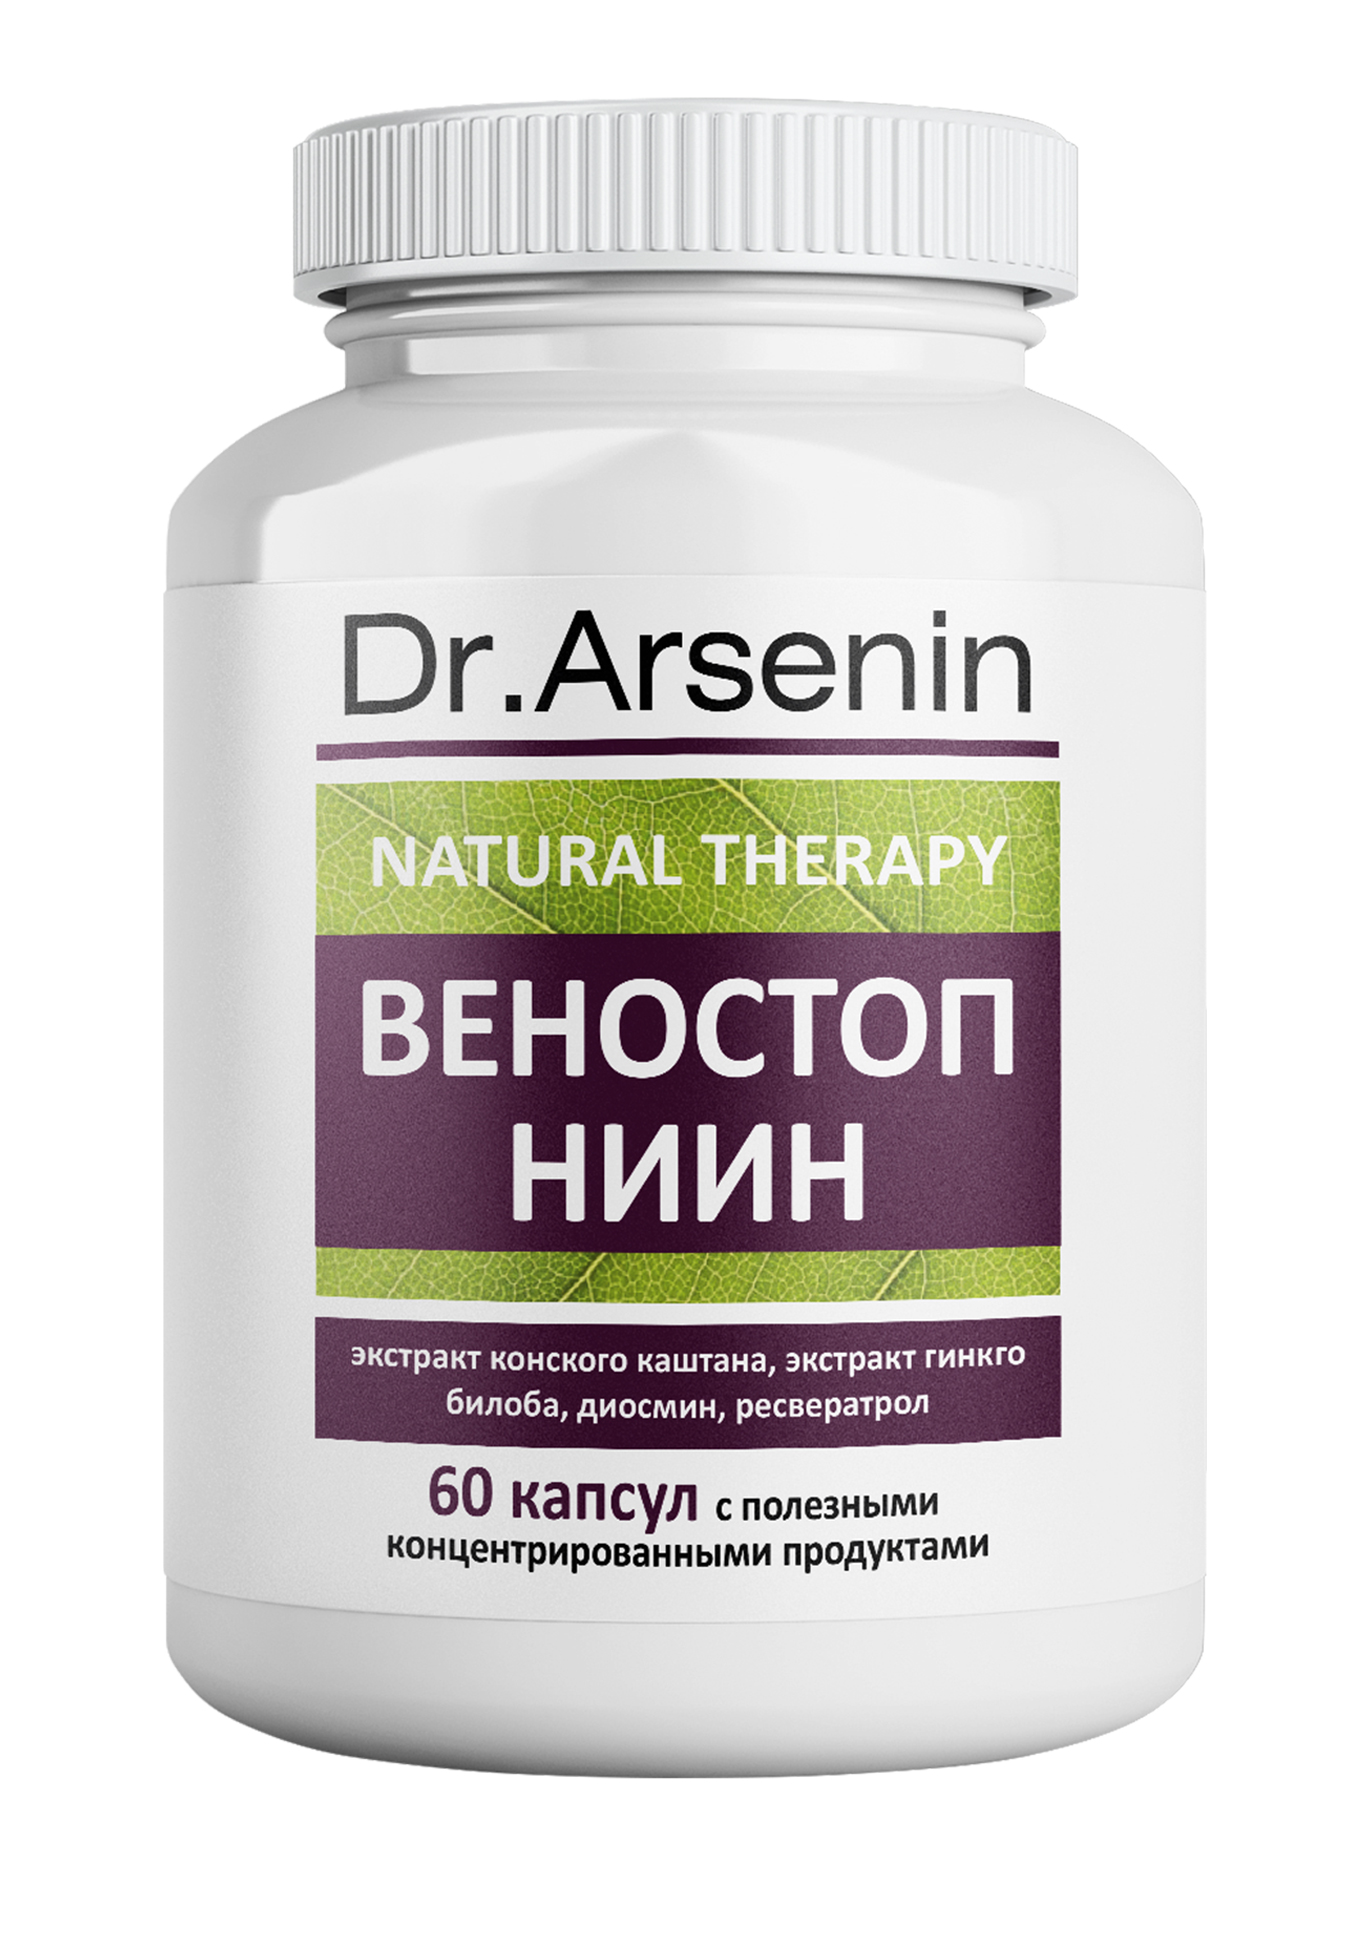 Dr. Arsenin. ВЕНОСТОП НИИН dr arsenin концентрированный пищевой продукт атеро стоп